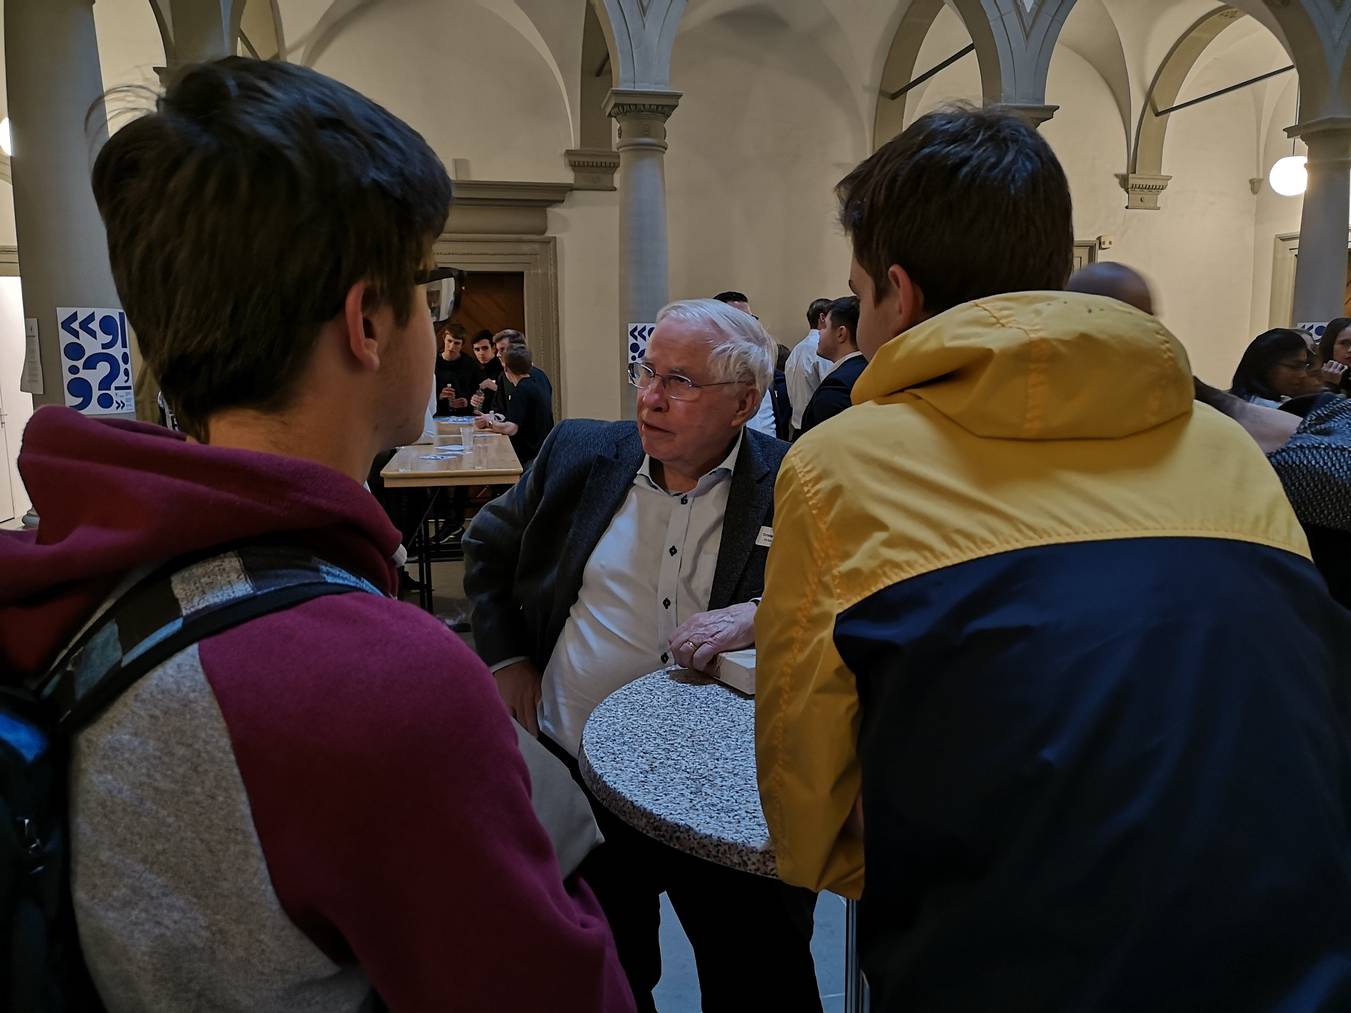 Diskussionen zwischen Generationen im Rahmen der Jugendsession im Luzerner Regierungsgebäude.